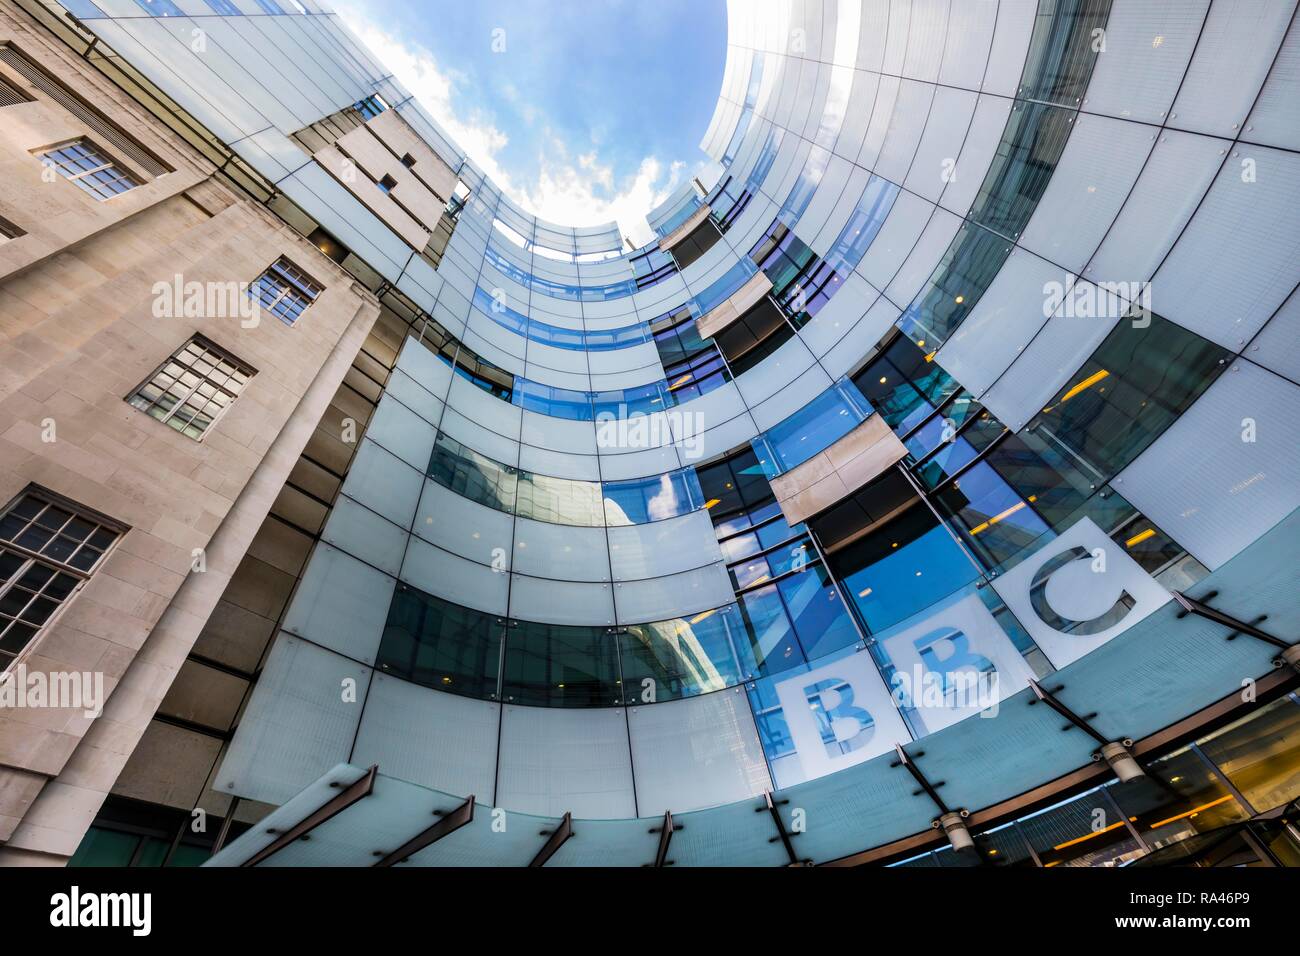 Siège de la station de radio et télévision, BBC Broadcasting House, Londres, Grande-Bretagne Banque D'Images